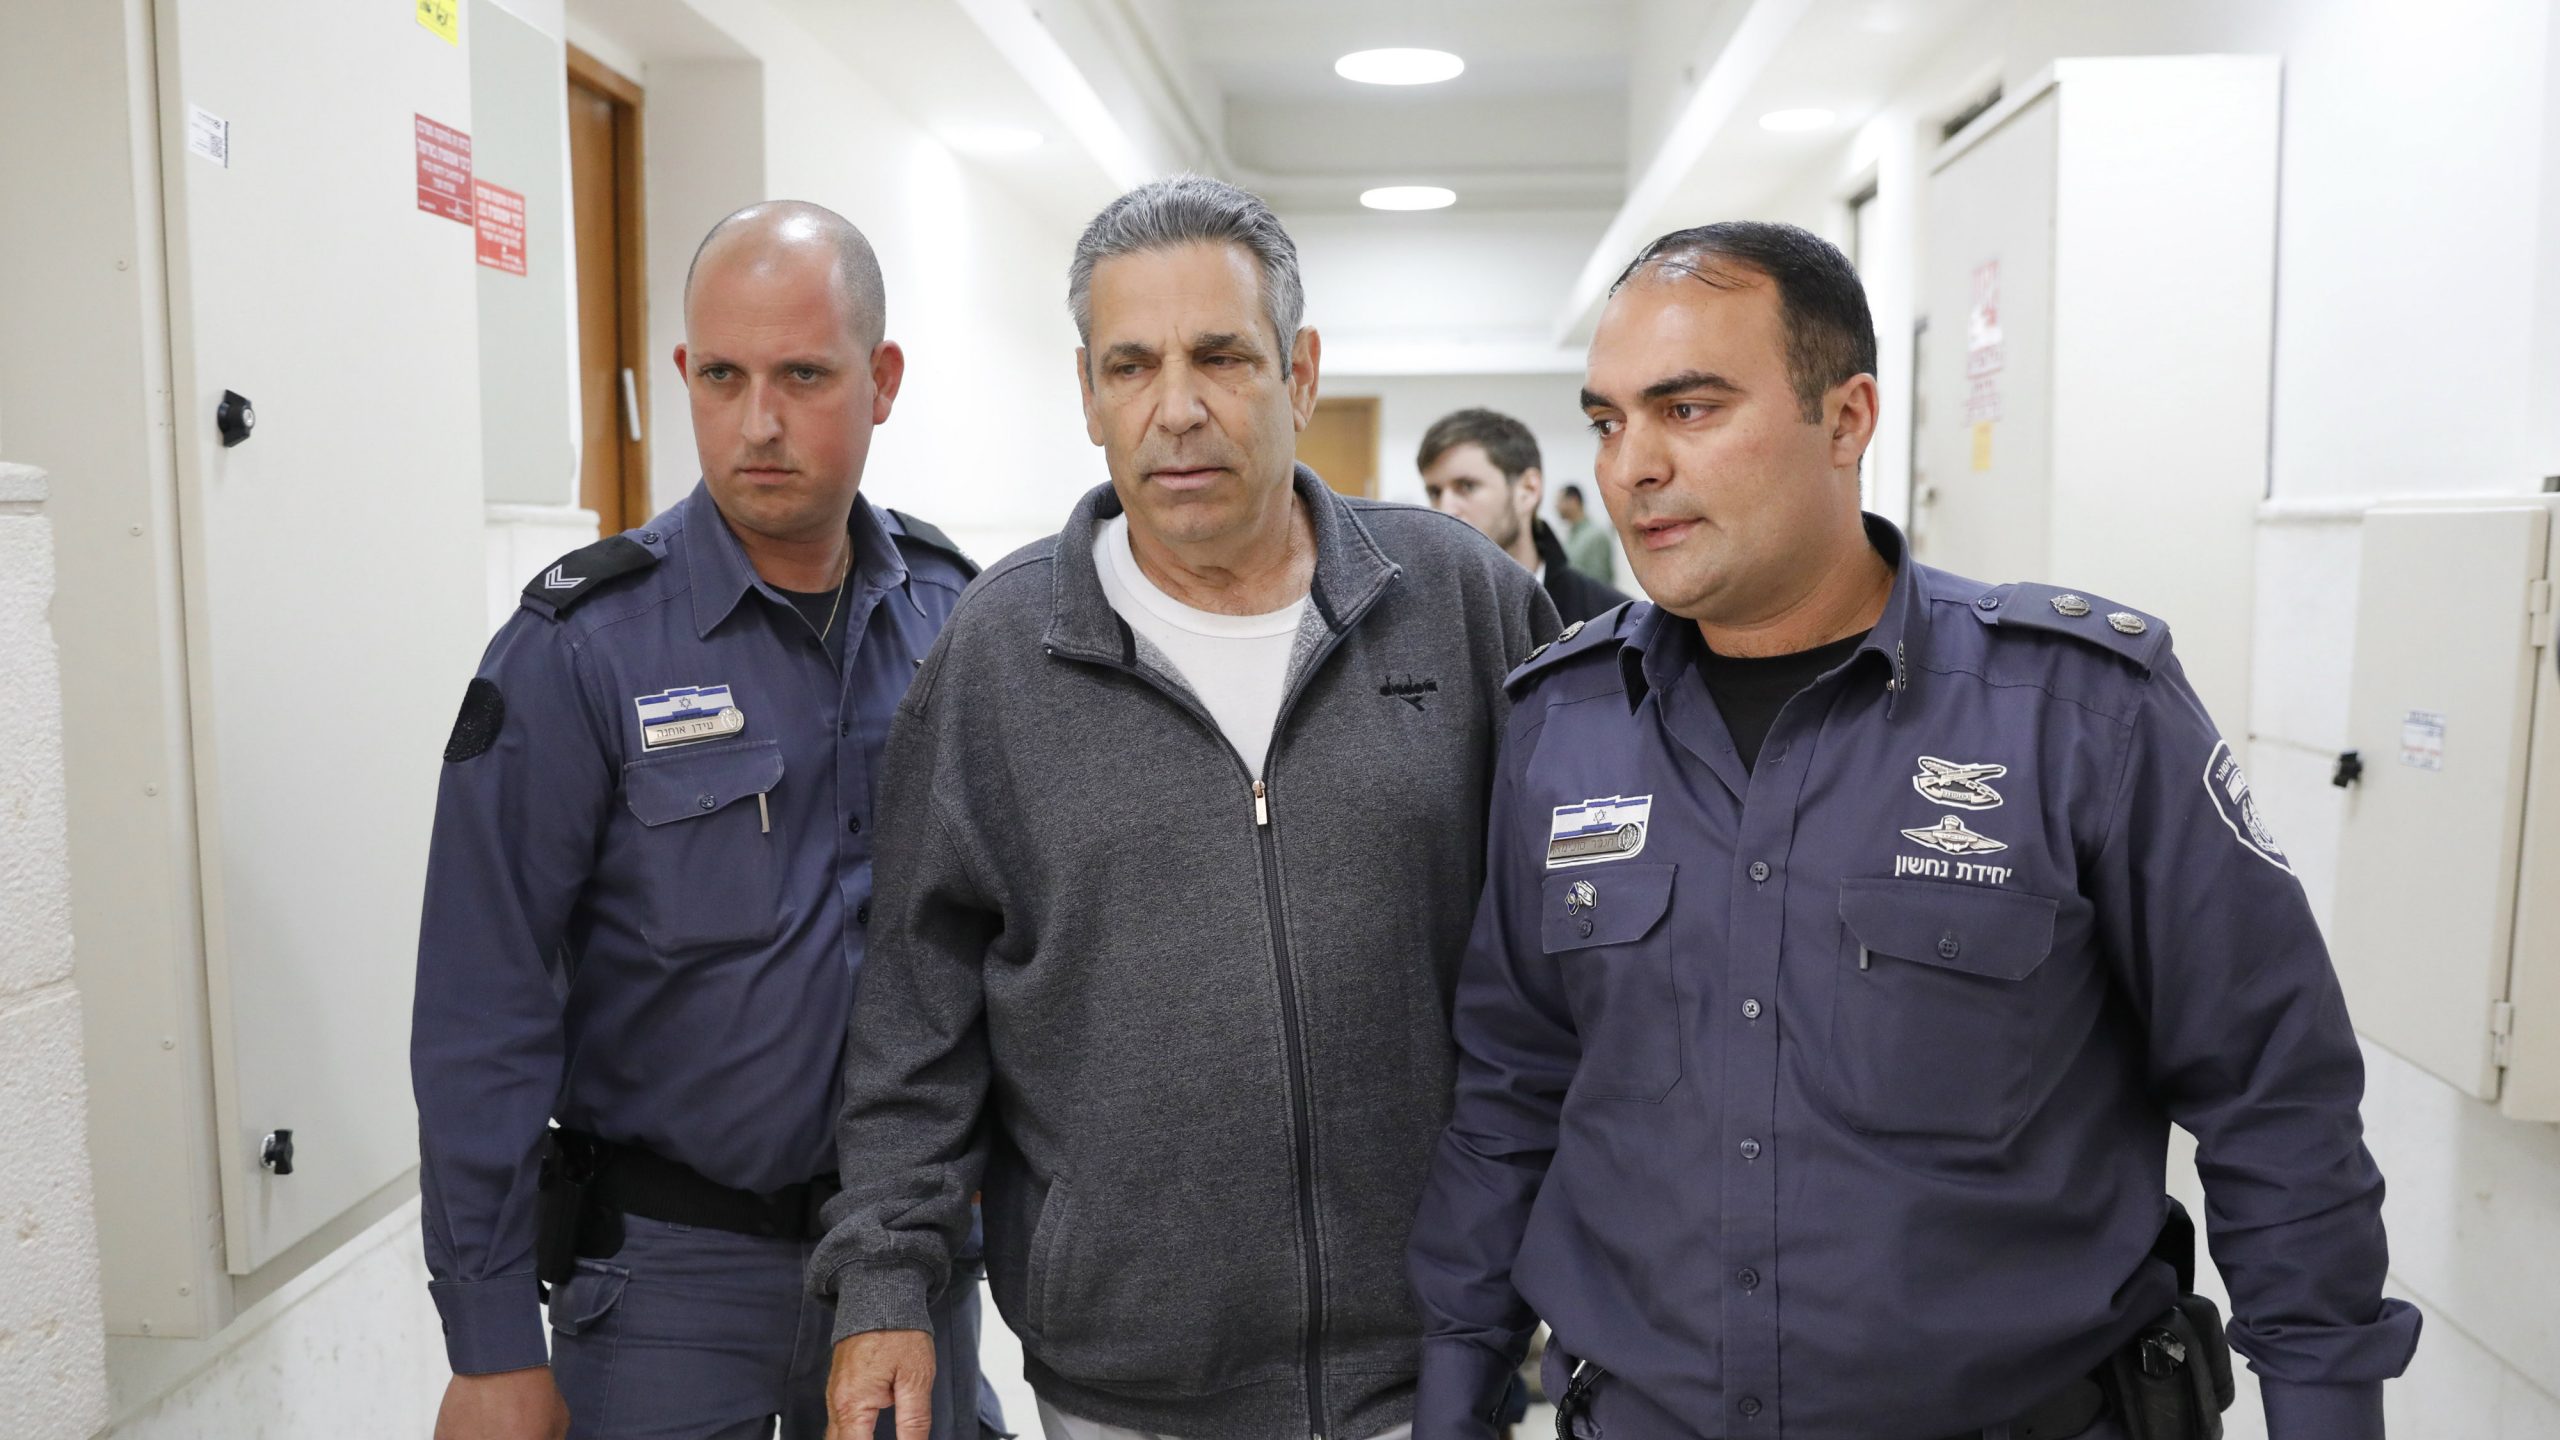 Bivšem izraelskom ministru 11 godina zatvora zbog špijunaže 1